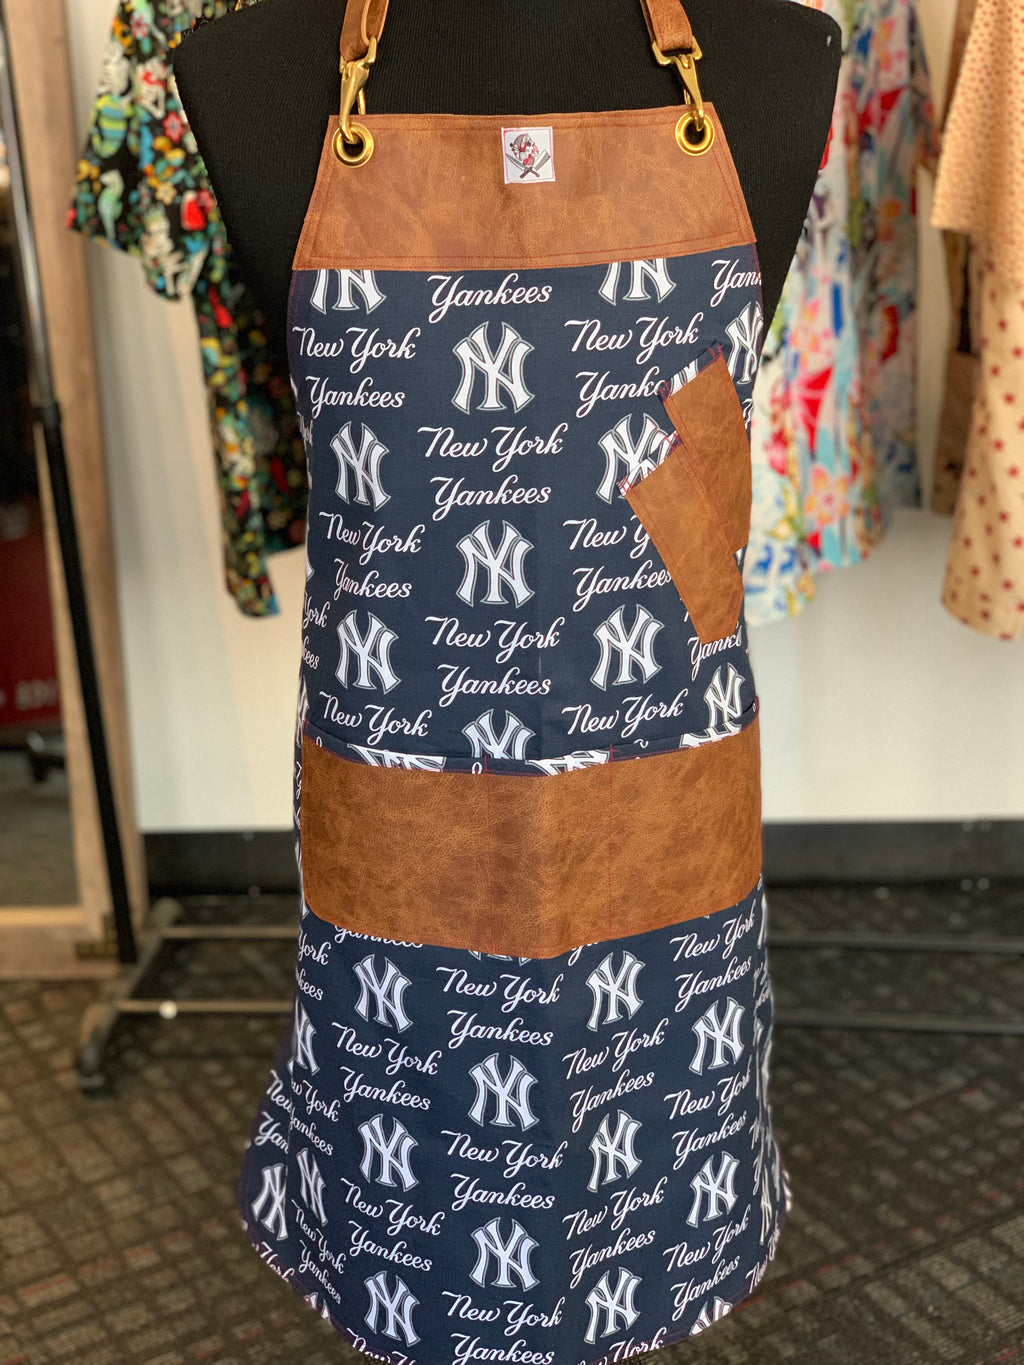 NY Yankees apron